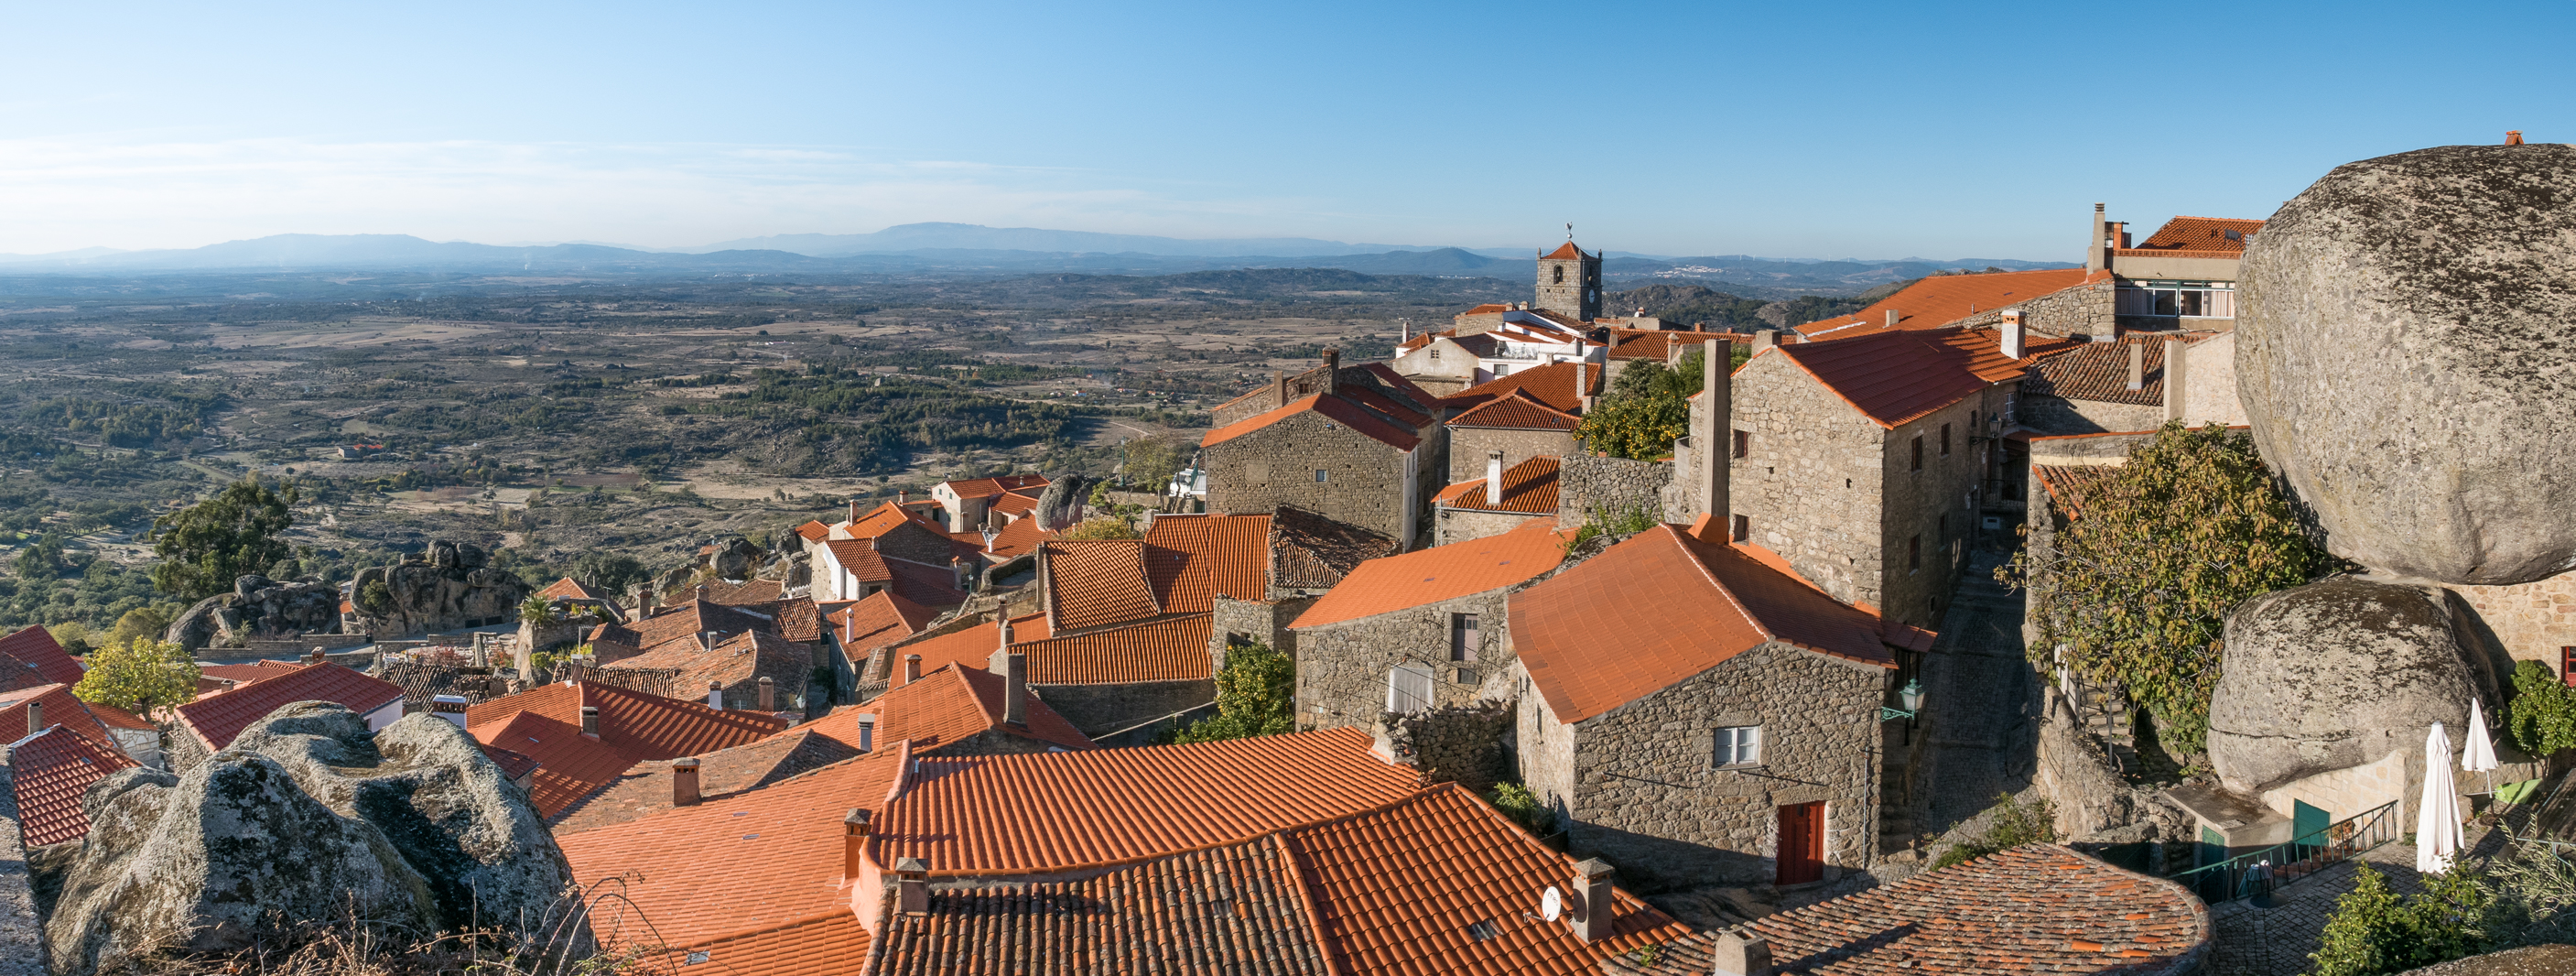 Villages historiques des Beiras // Portugal